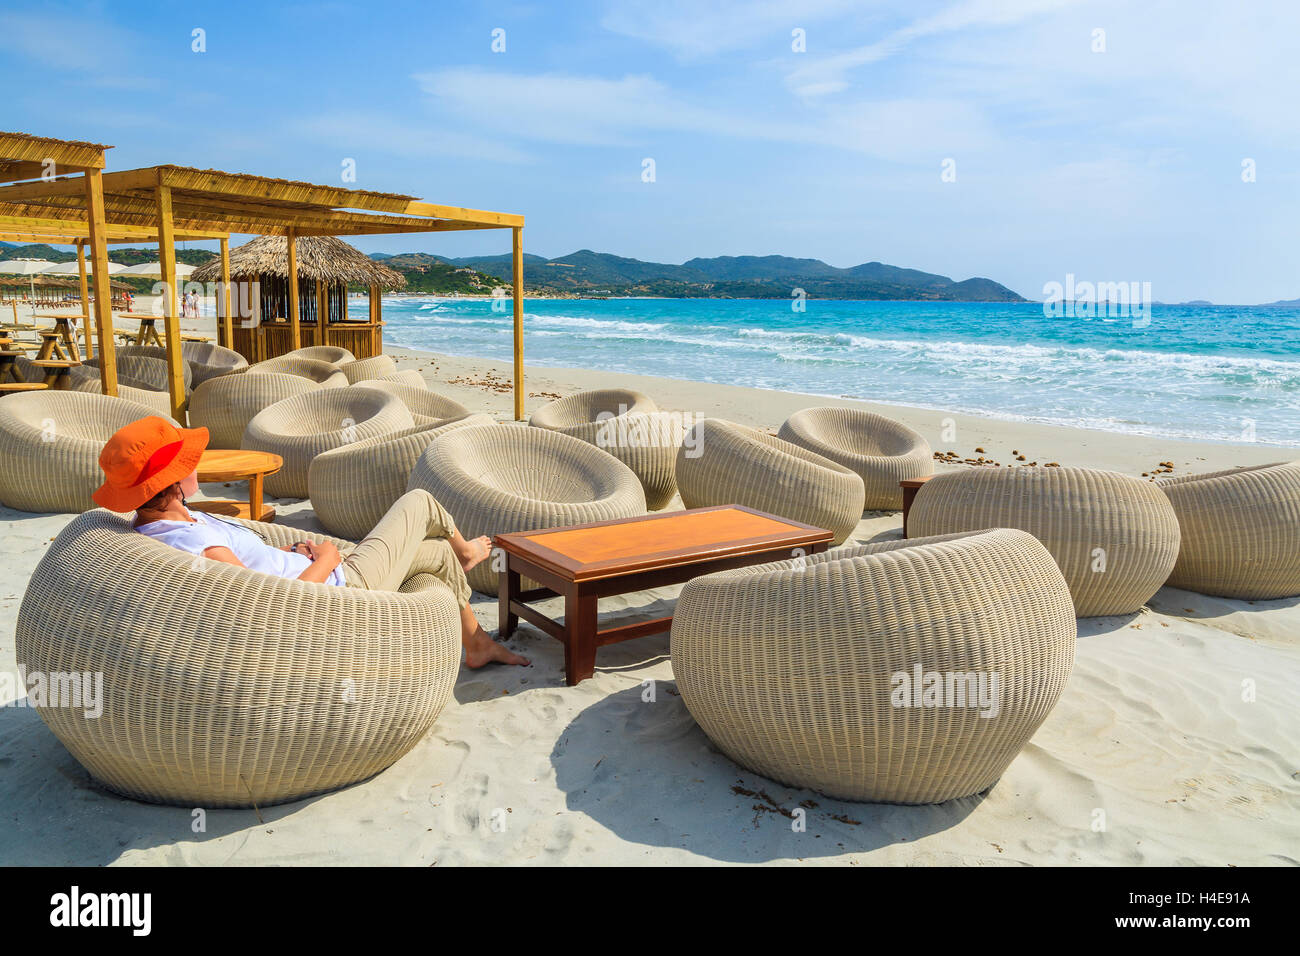 Joven turista se sienta en un bar en la playa de Porto Giunco bay, Isla Cerdeña, Italia Foto de stock